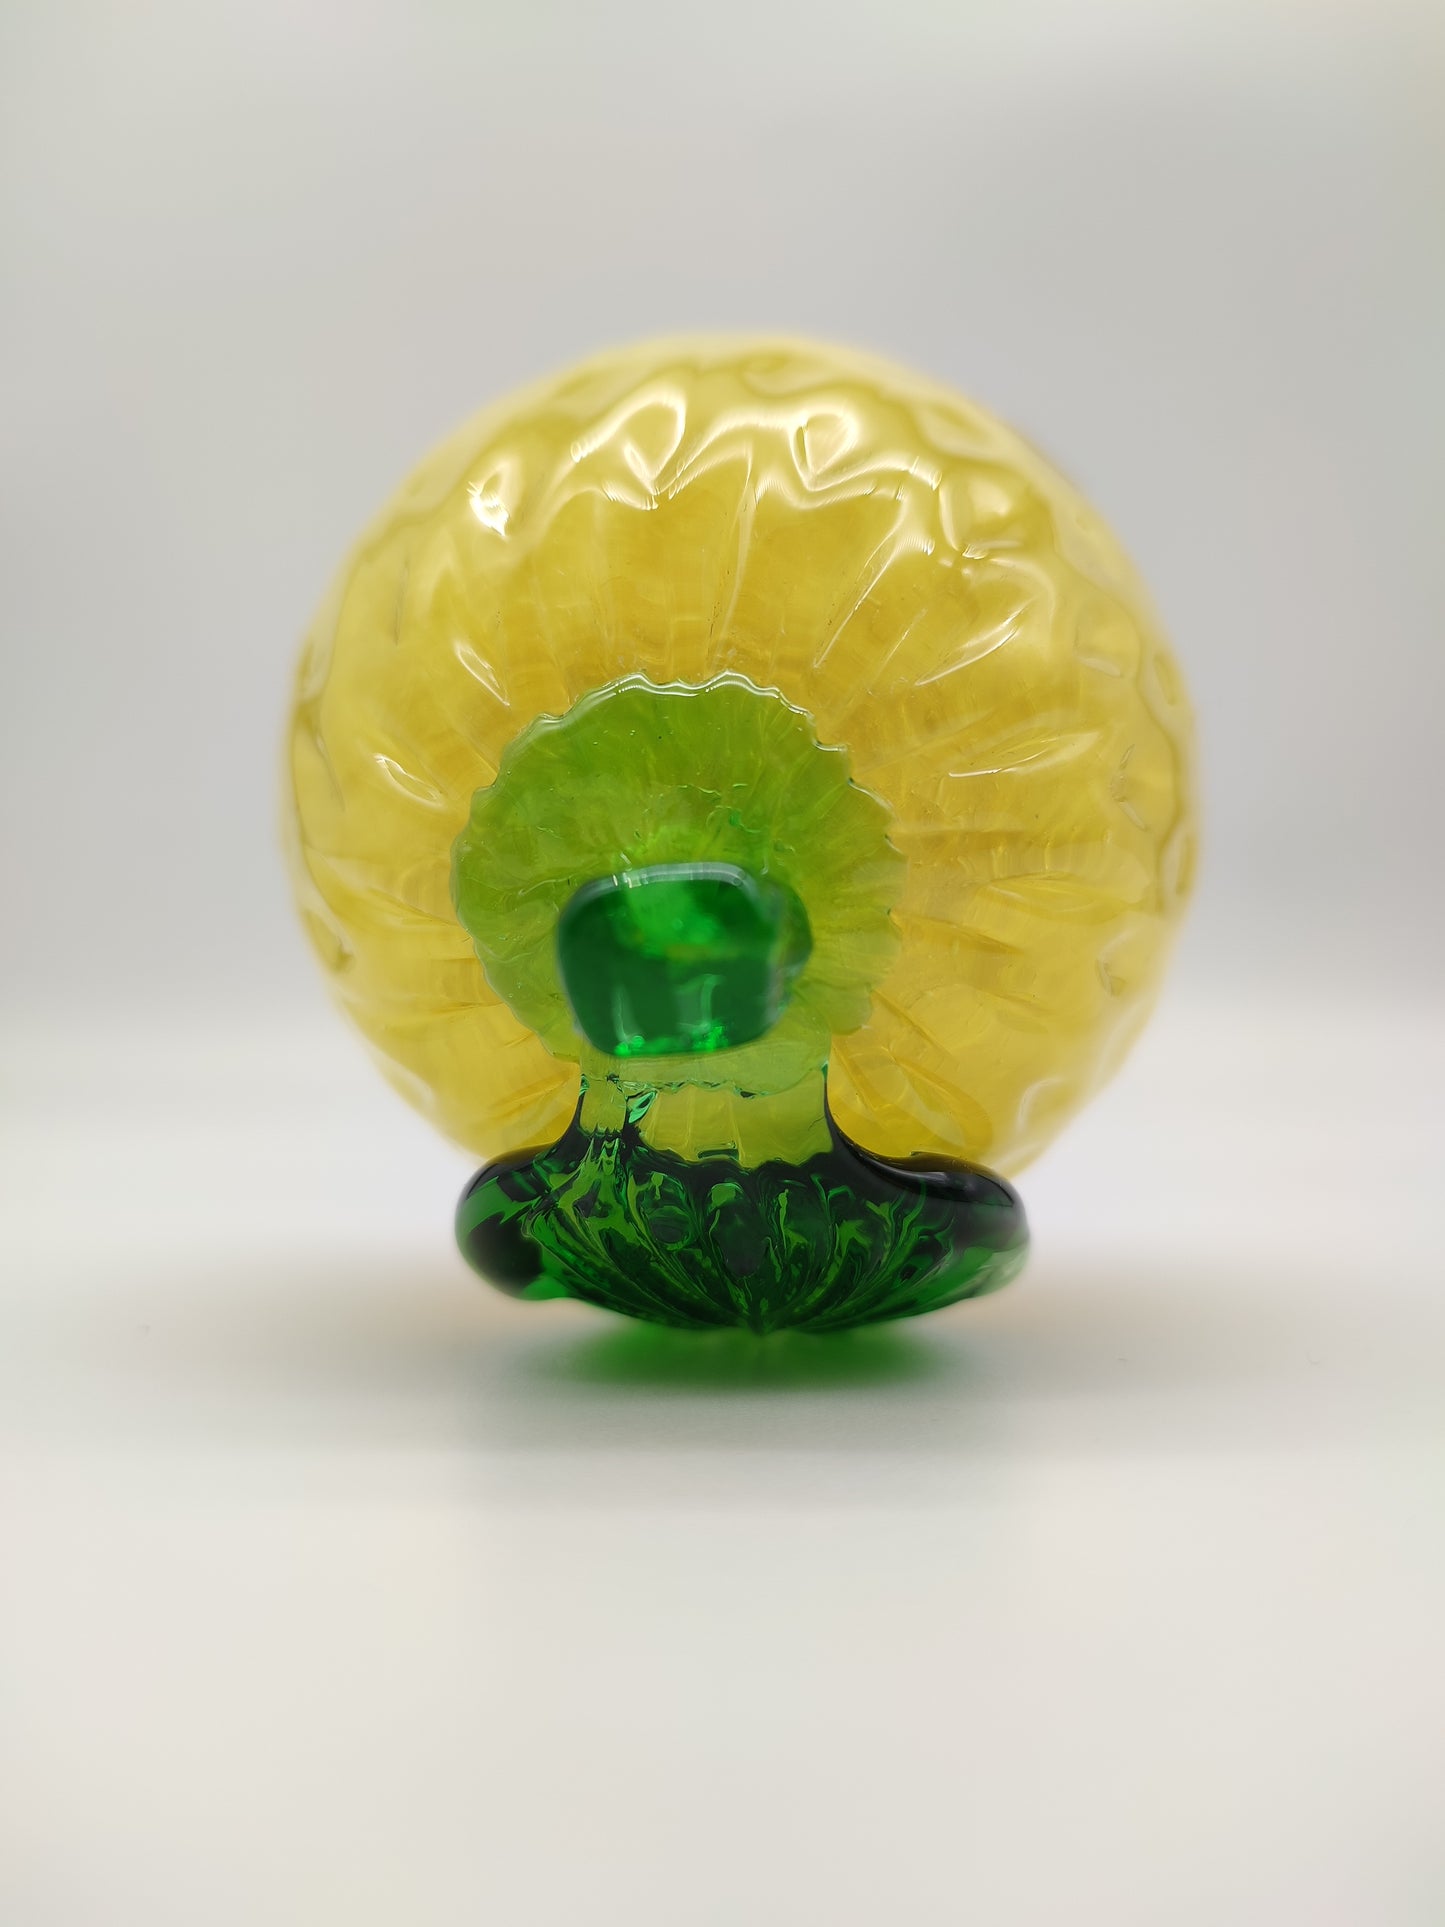 68128-3 Limone in vetro di Murano